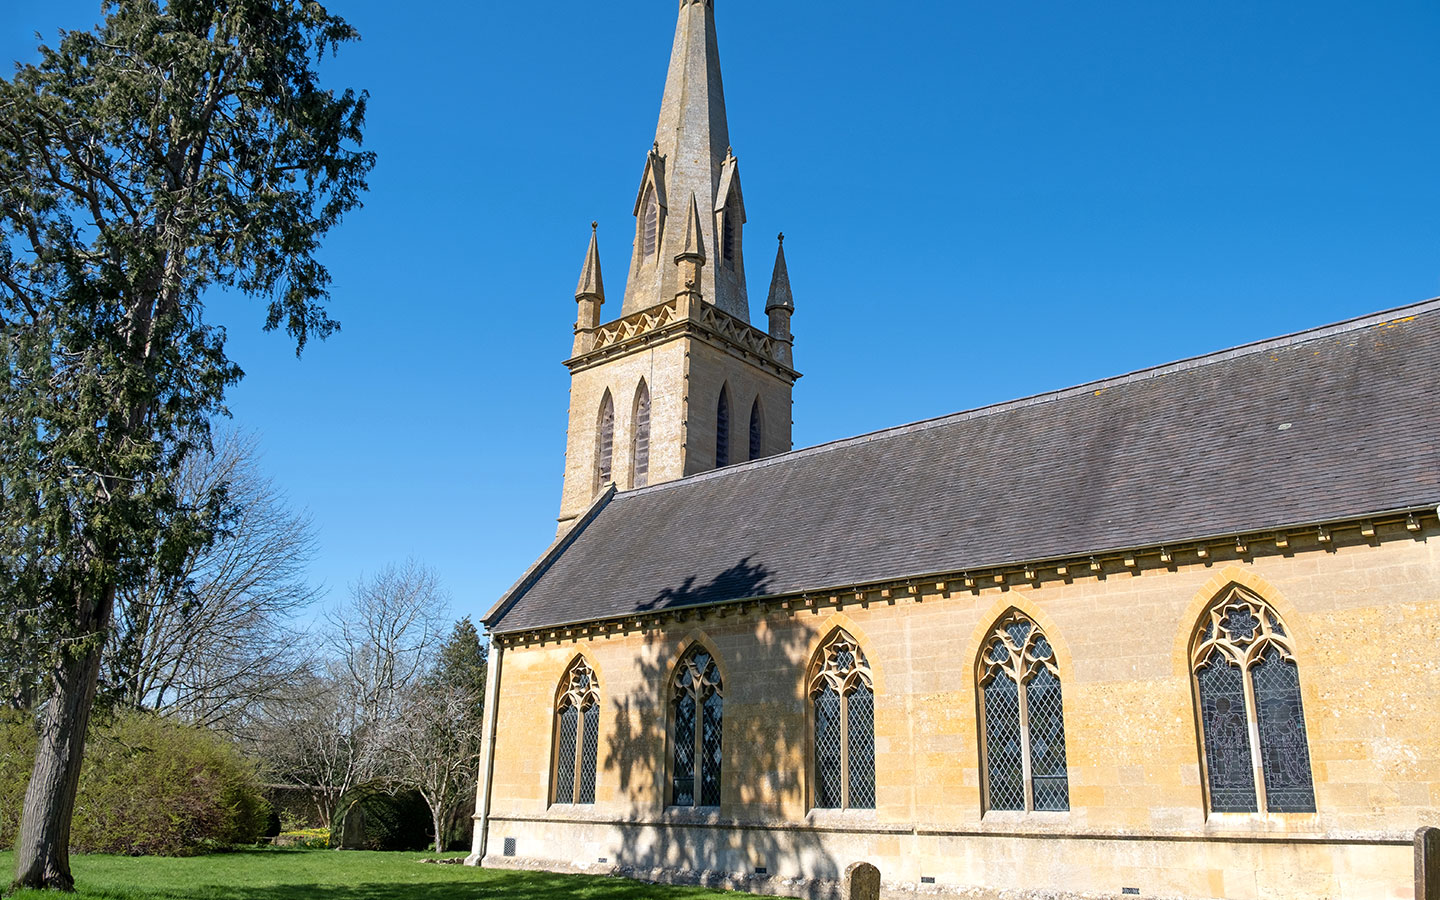 St David's Church in Moreton-in-Marsh